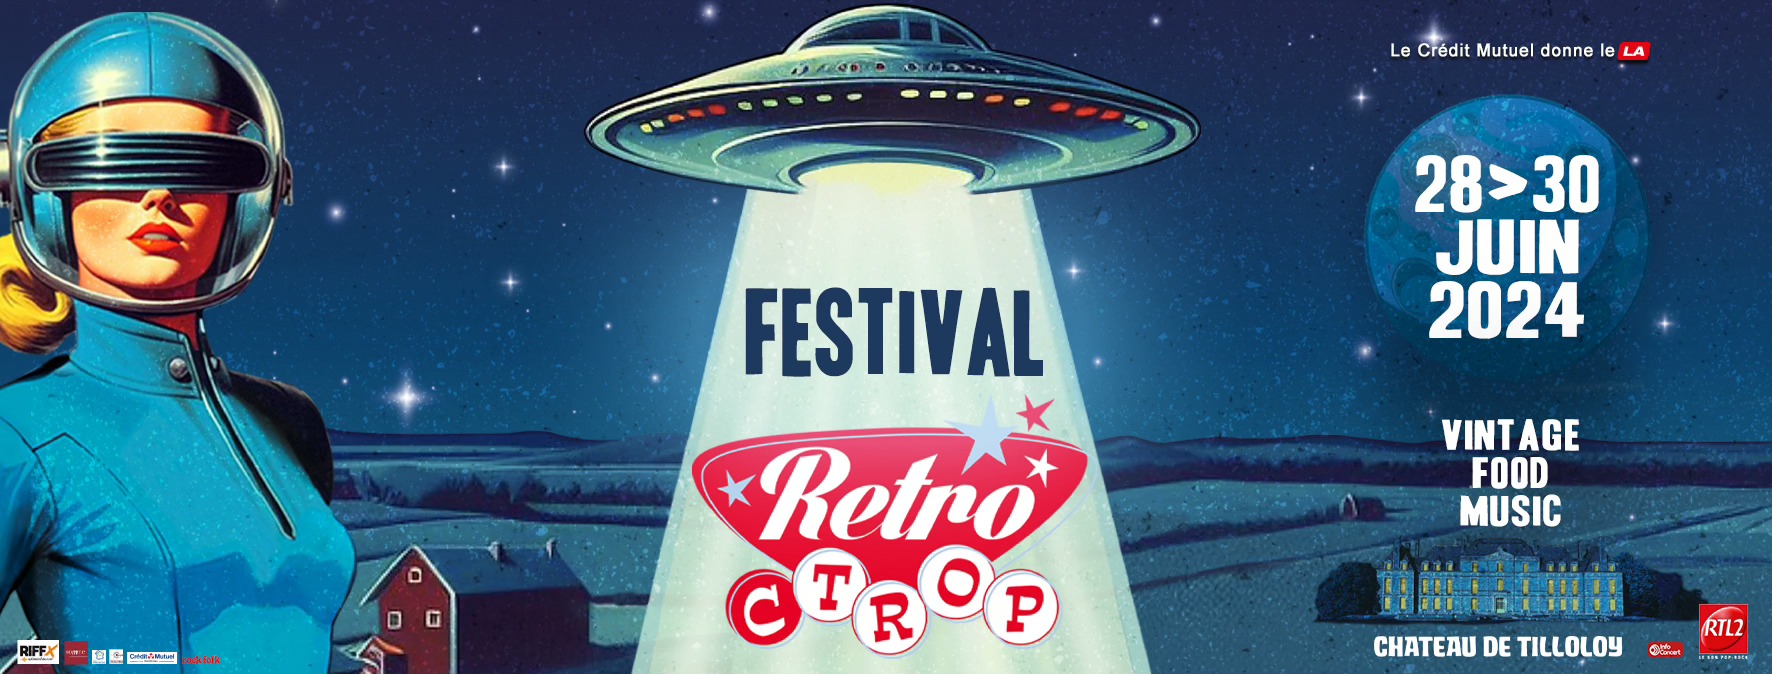 Affiche Festival Retro C Trop 2024